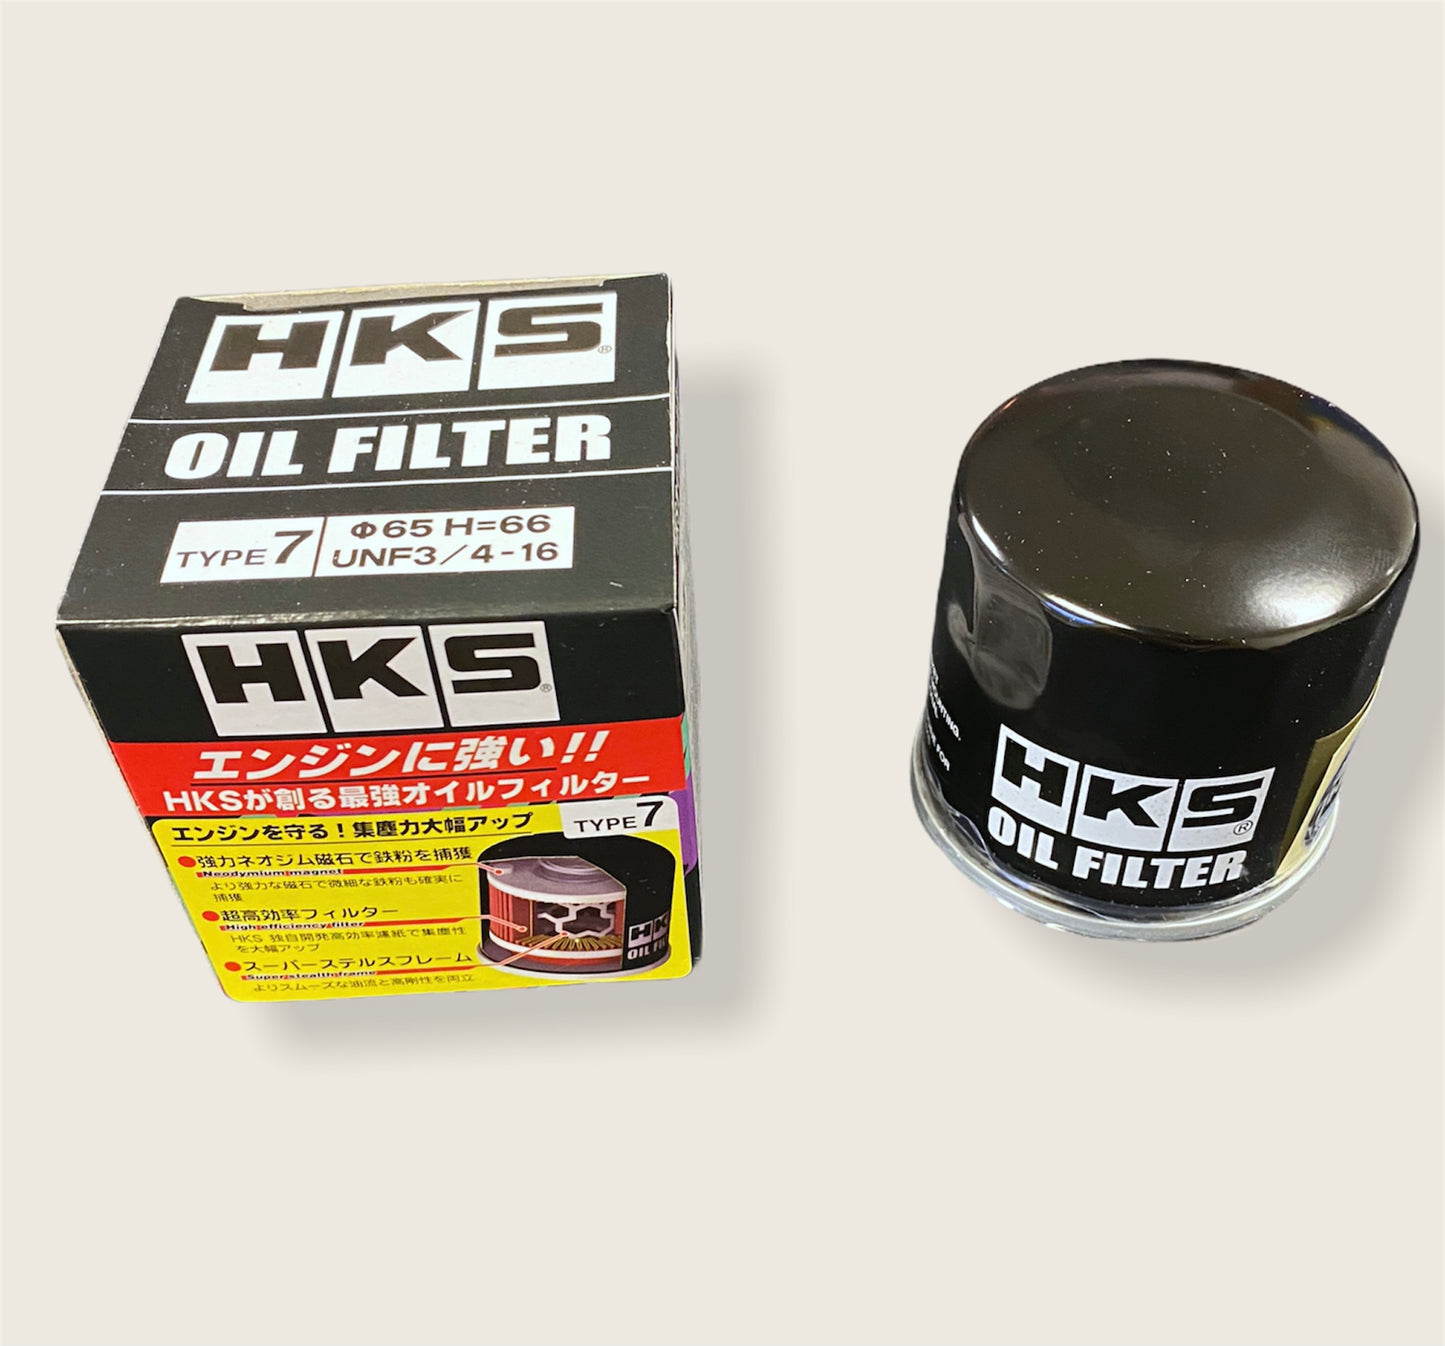 NEW HKS Oil Filter For Nissan Skyline GTR R32 R33 R34 RB RB26DETT 180SX